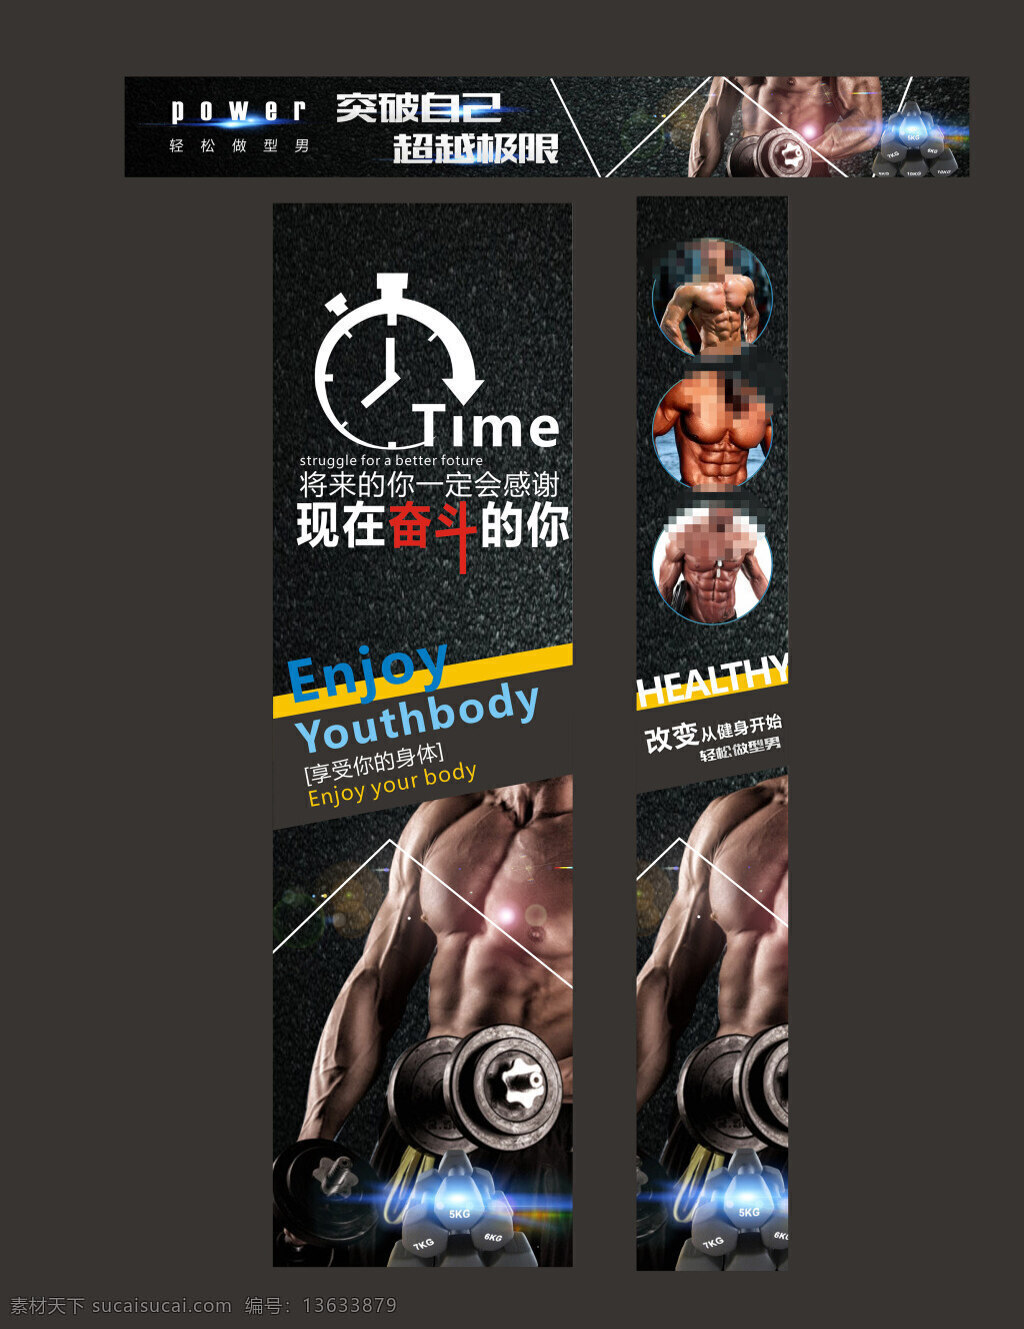 健身房背景墙 健身展板 健身 健身海报 健身图片 健身kt版 健身易拉宝 健身宣传 健身房 健身vip 健身中心 海报模版 海报样式 黑色